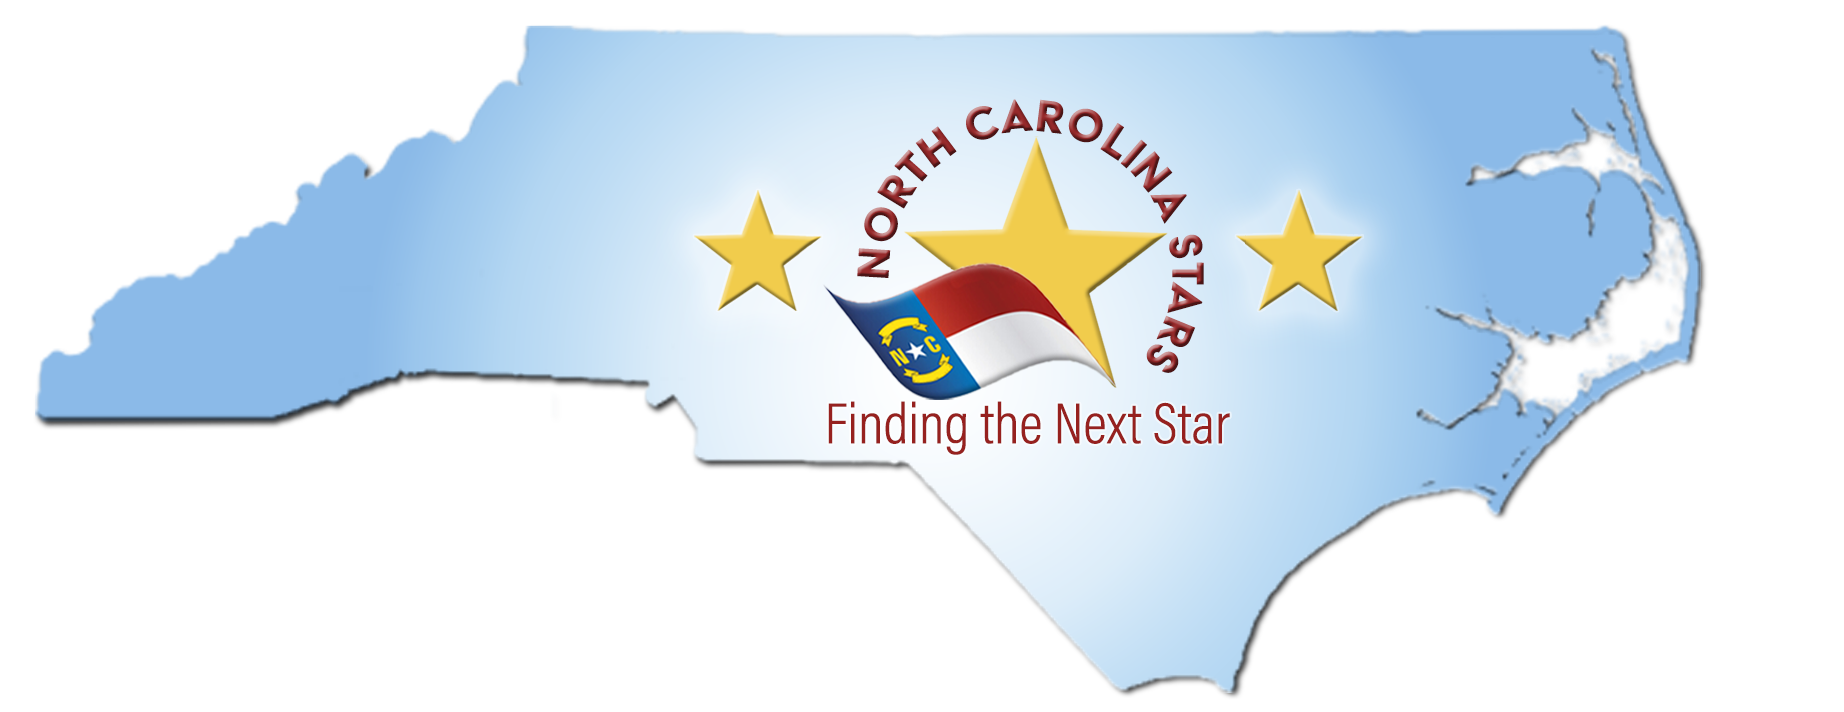 North Carolina Stars